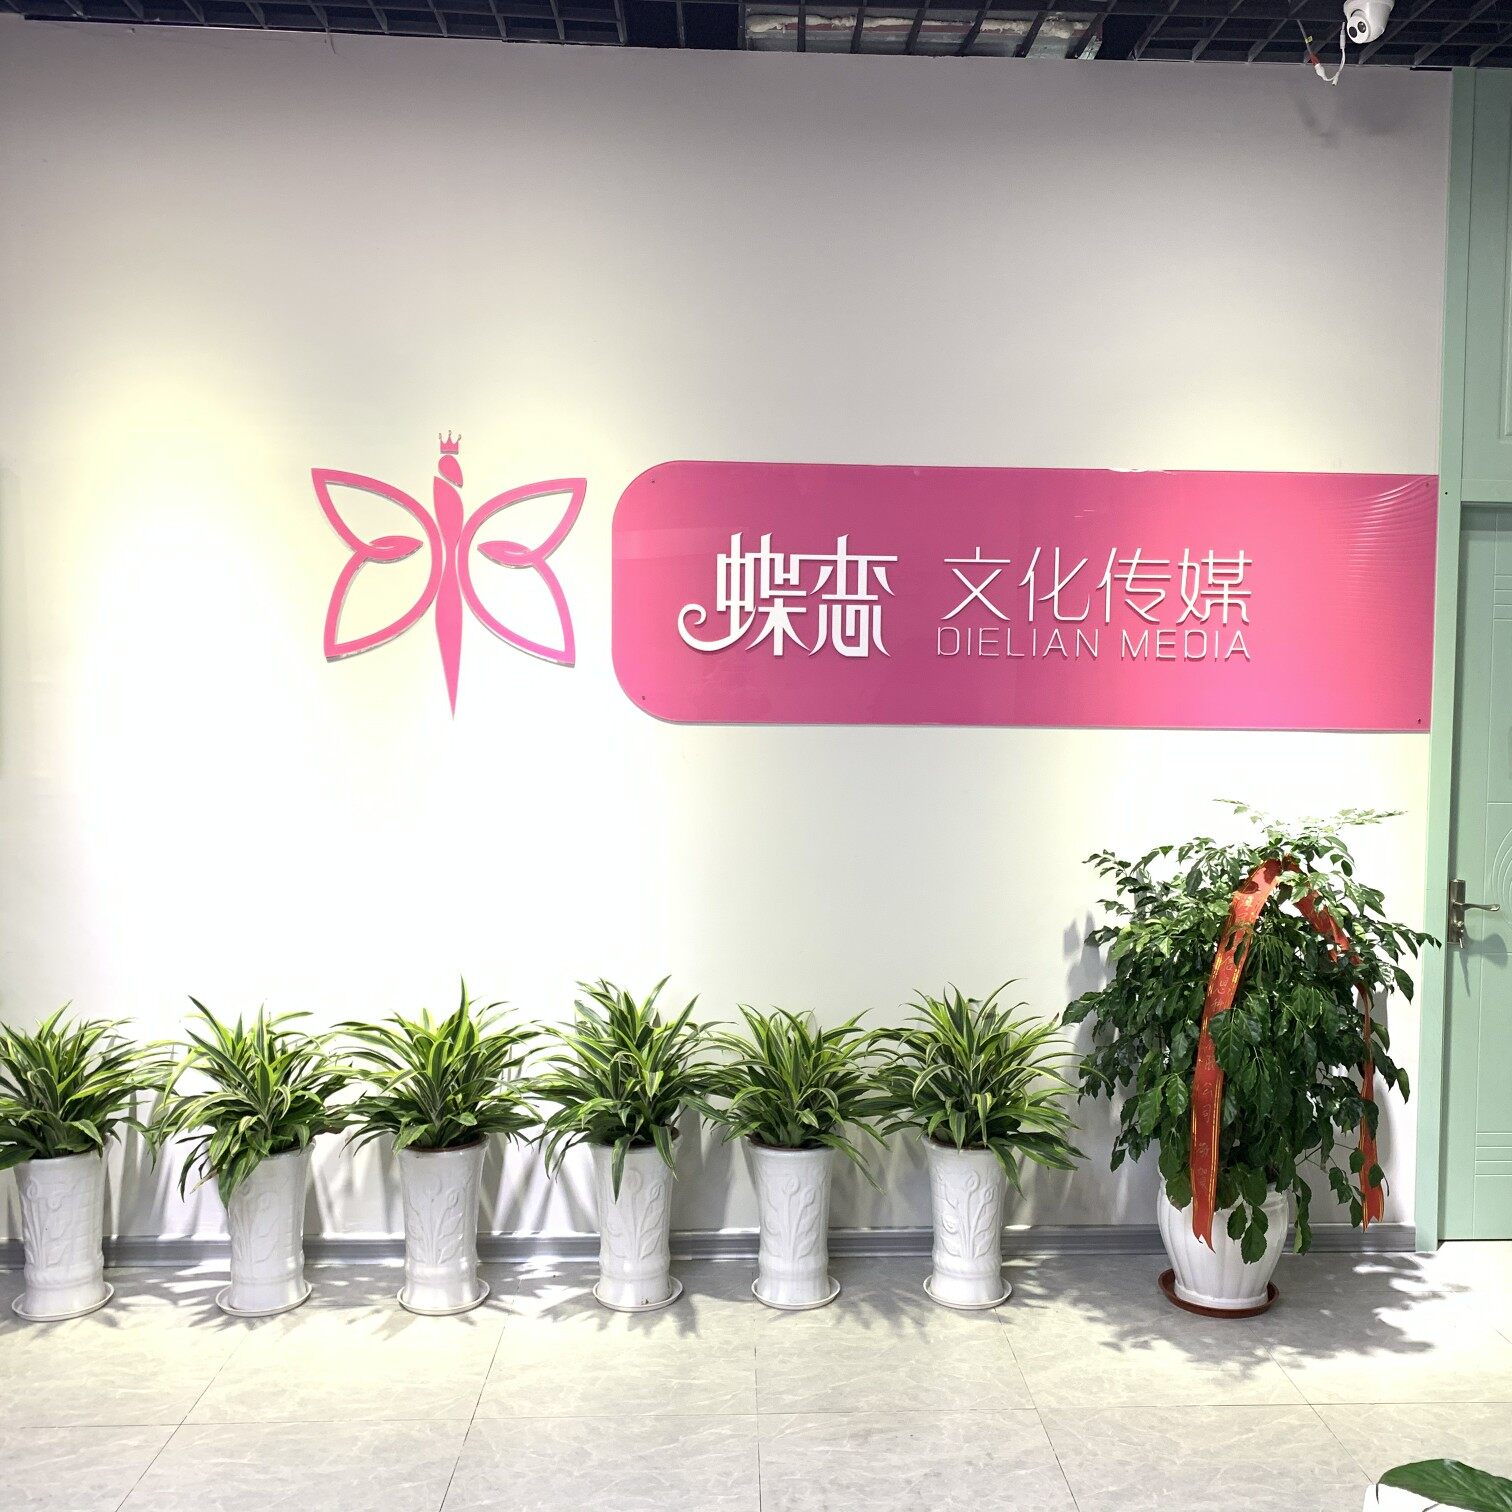 上海蝶恋文化传媒有限公司logo